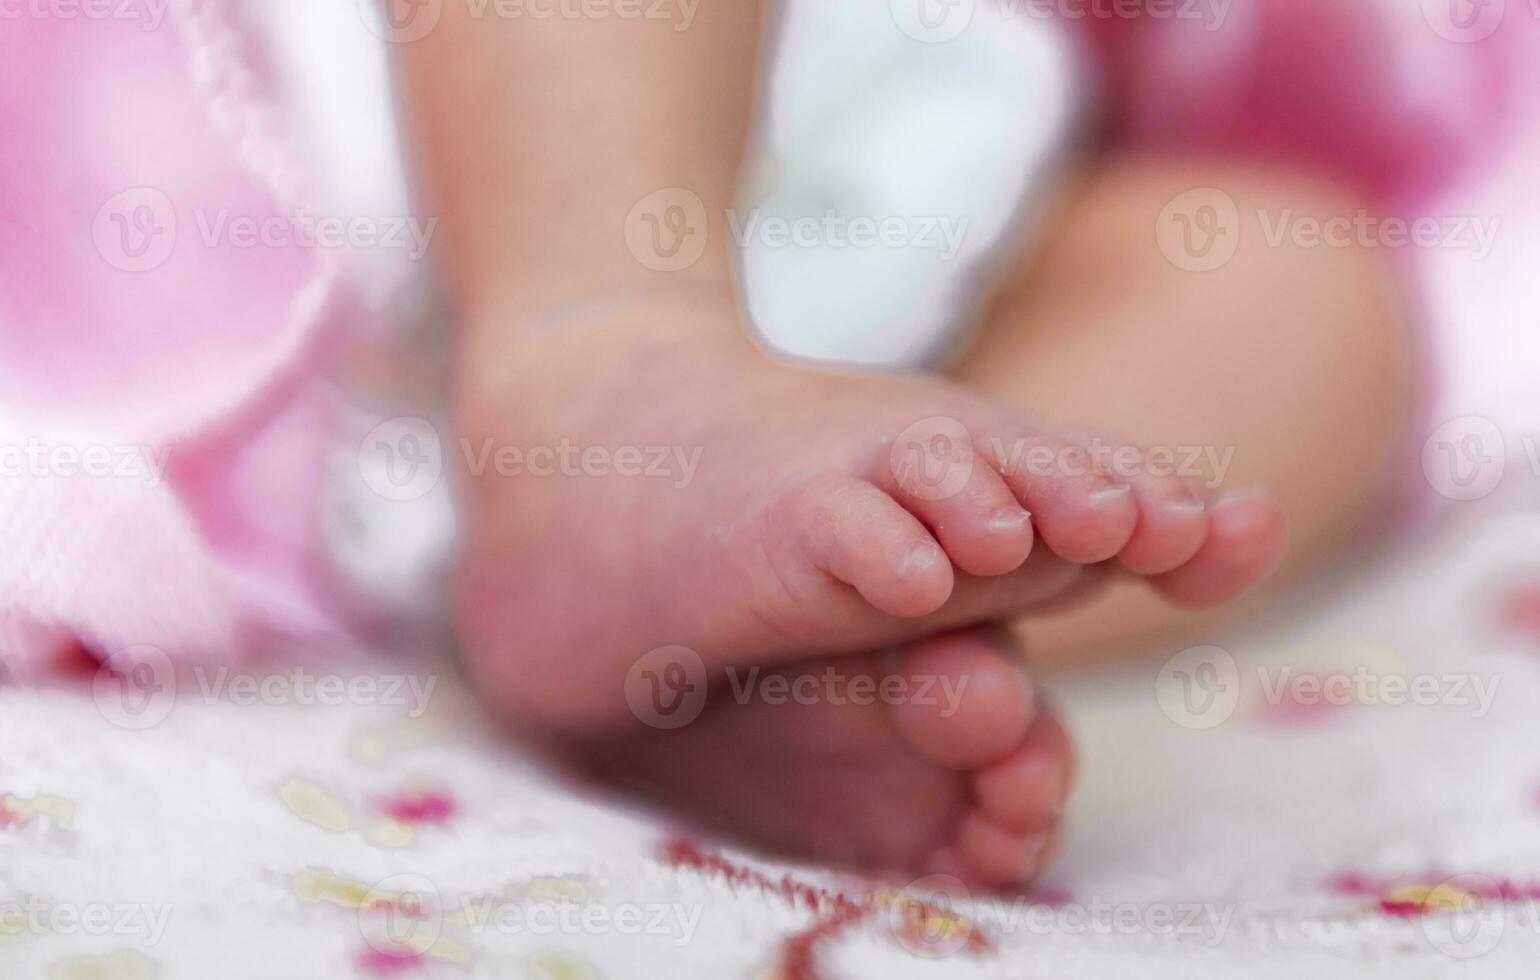 ásia recém-nascido bebê pés em branco cobertor. foto